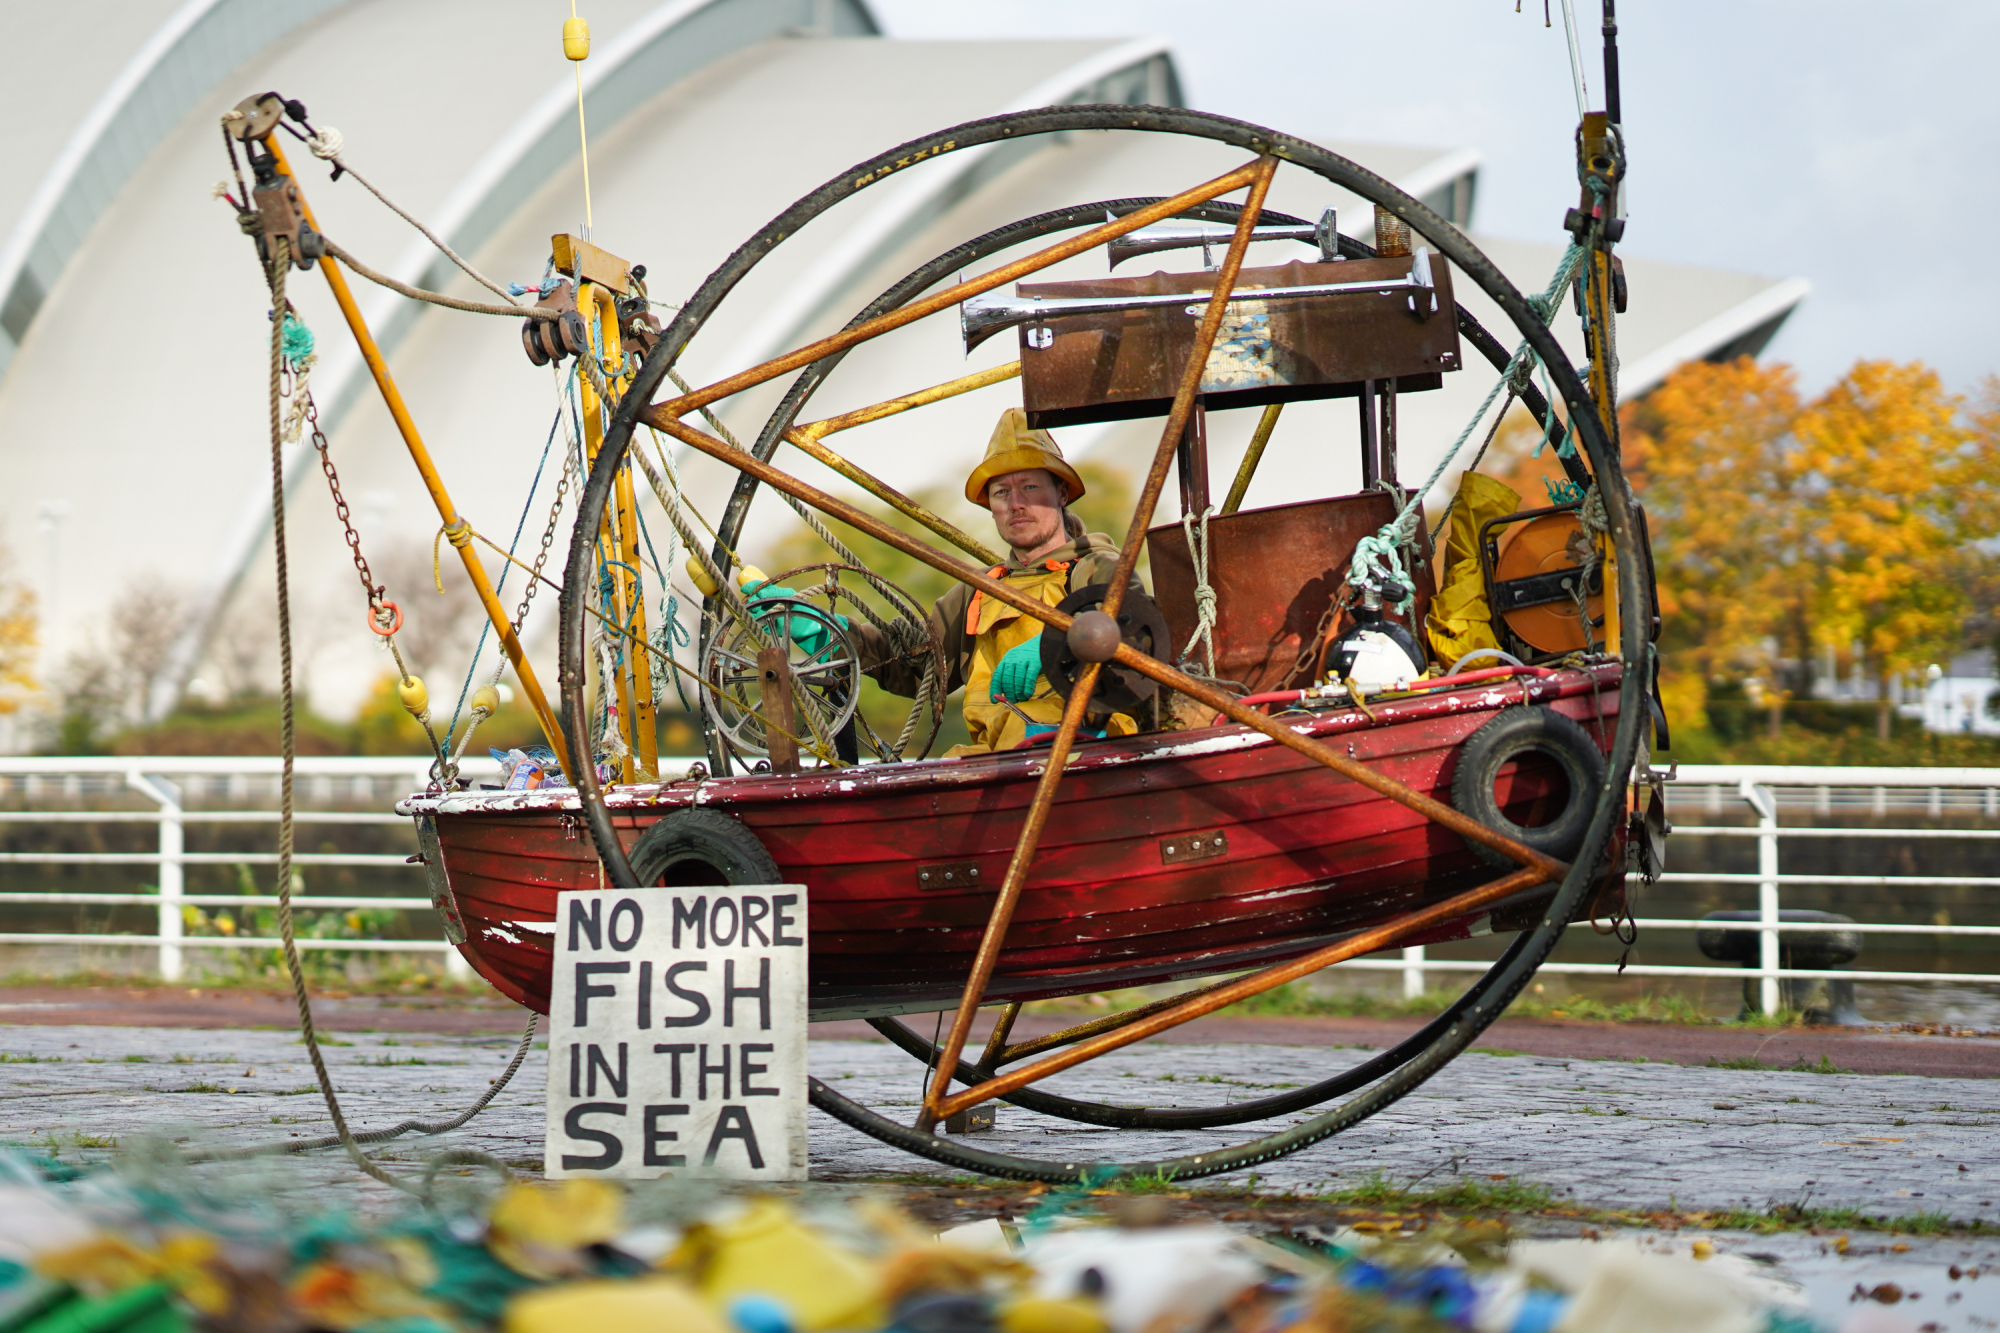 El grupo ecologista Ocean Rebellion monta un barco de pesca recogiendo basura y mer-people muertos fuera de las reuniones de la COP26 en Glasgow, Escocia.